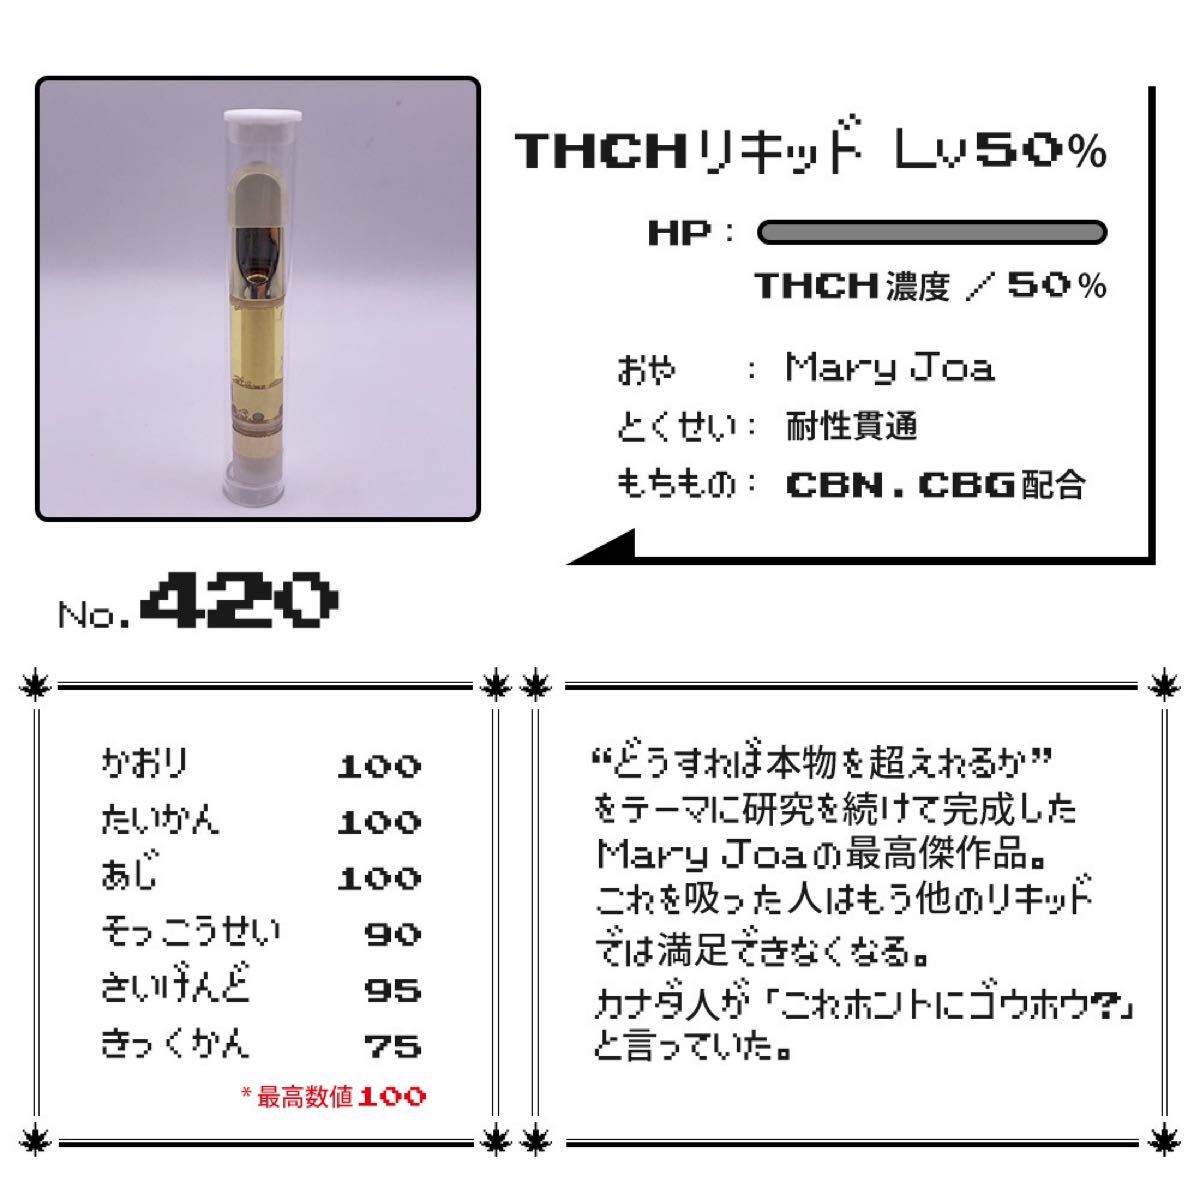 THCHリキッド 1ml Lv50 (THCH50%) ライブレジン【即日発送】